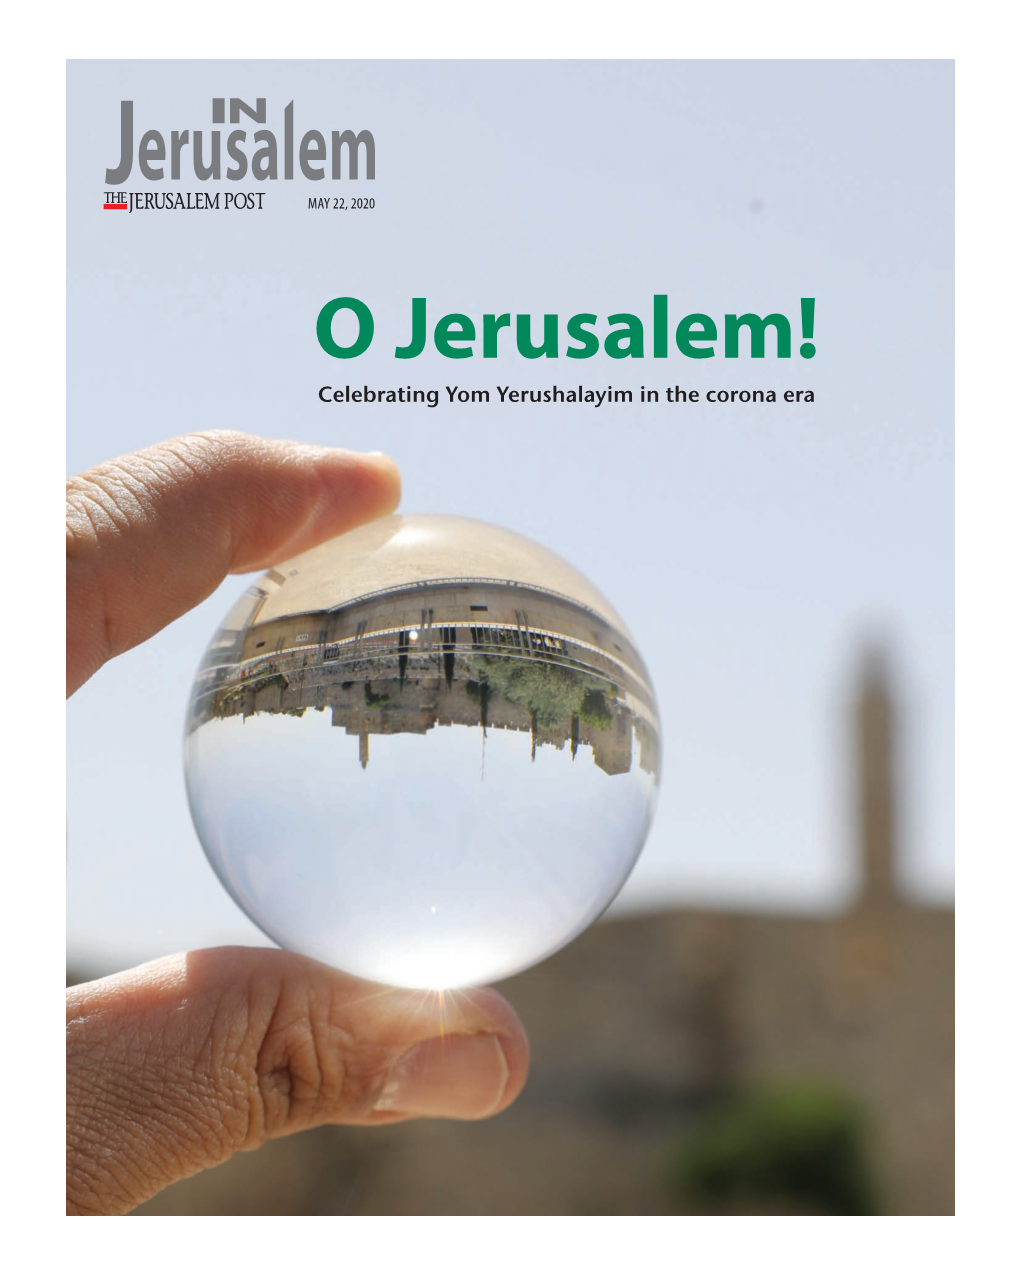 Celebrating Yom Yerushalayim in the Corona Era in JERUSALEM MAY 22, 2020